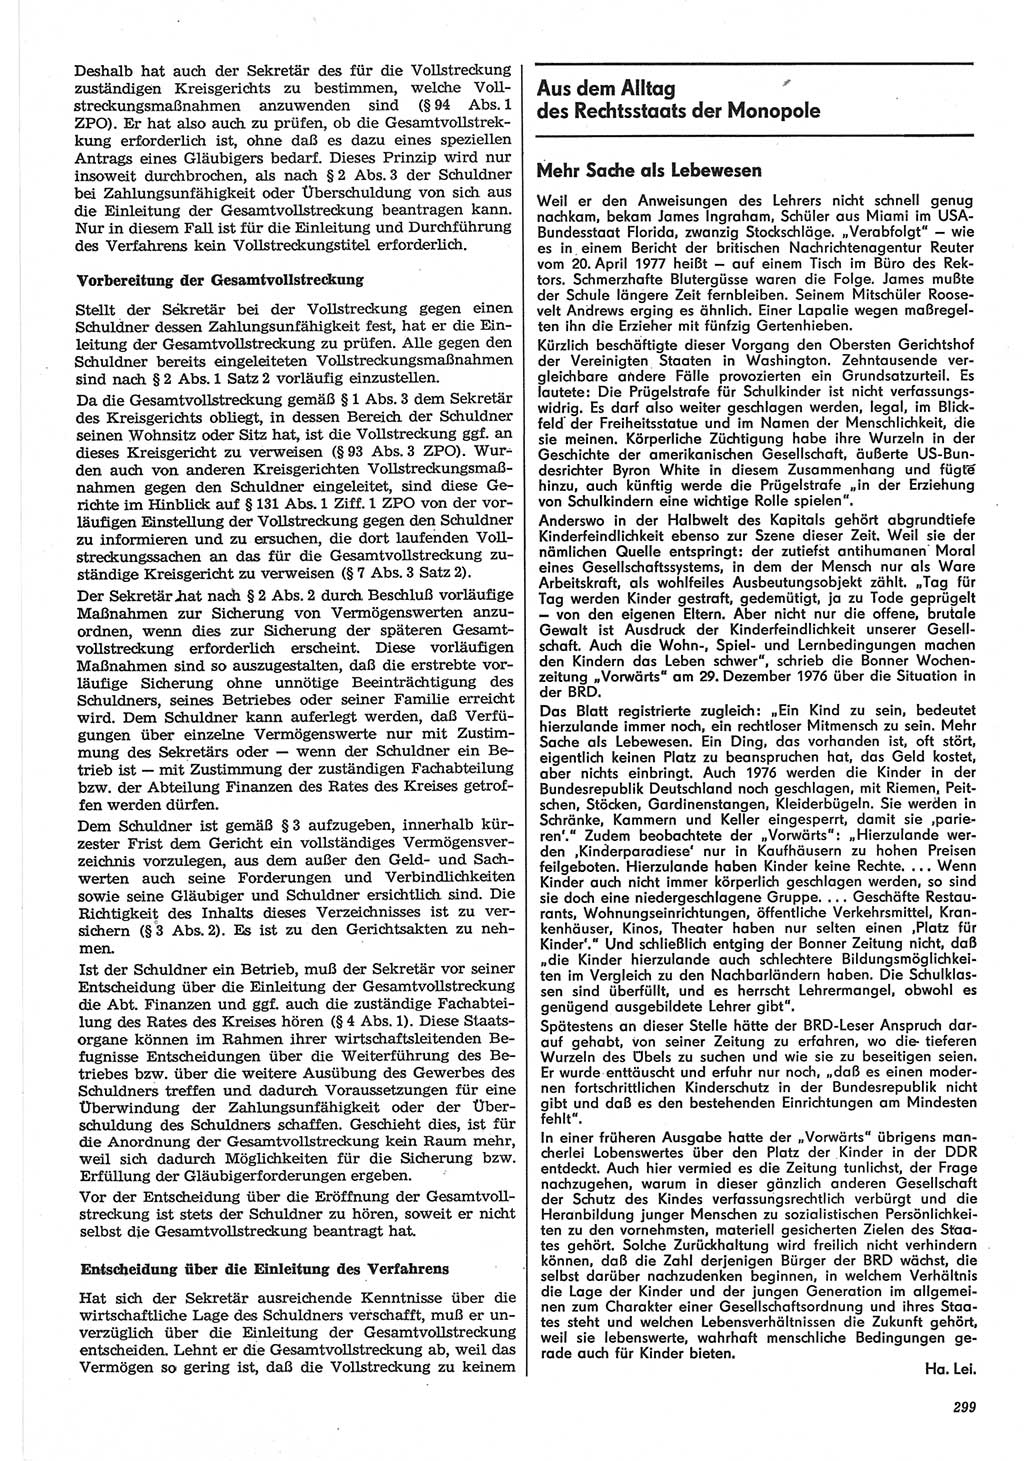 Neue Justiz (NJ), Zeitschrift für Recht und Rechtswissenschaft-Zeitschrift, sozialistisches Recht und Gesetzlichkeit, 31. Jahrgang 1977, Seite 299 (NJ DDR 1977, S. 299)